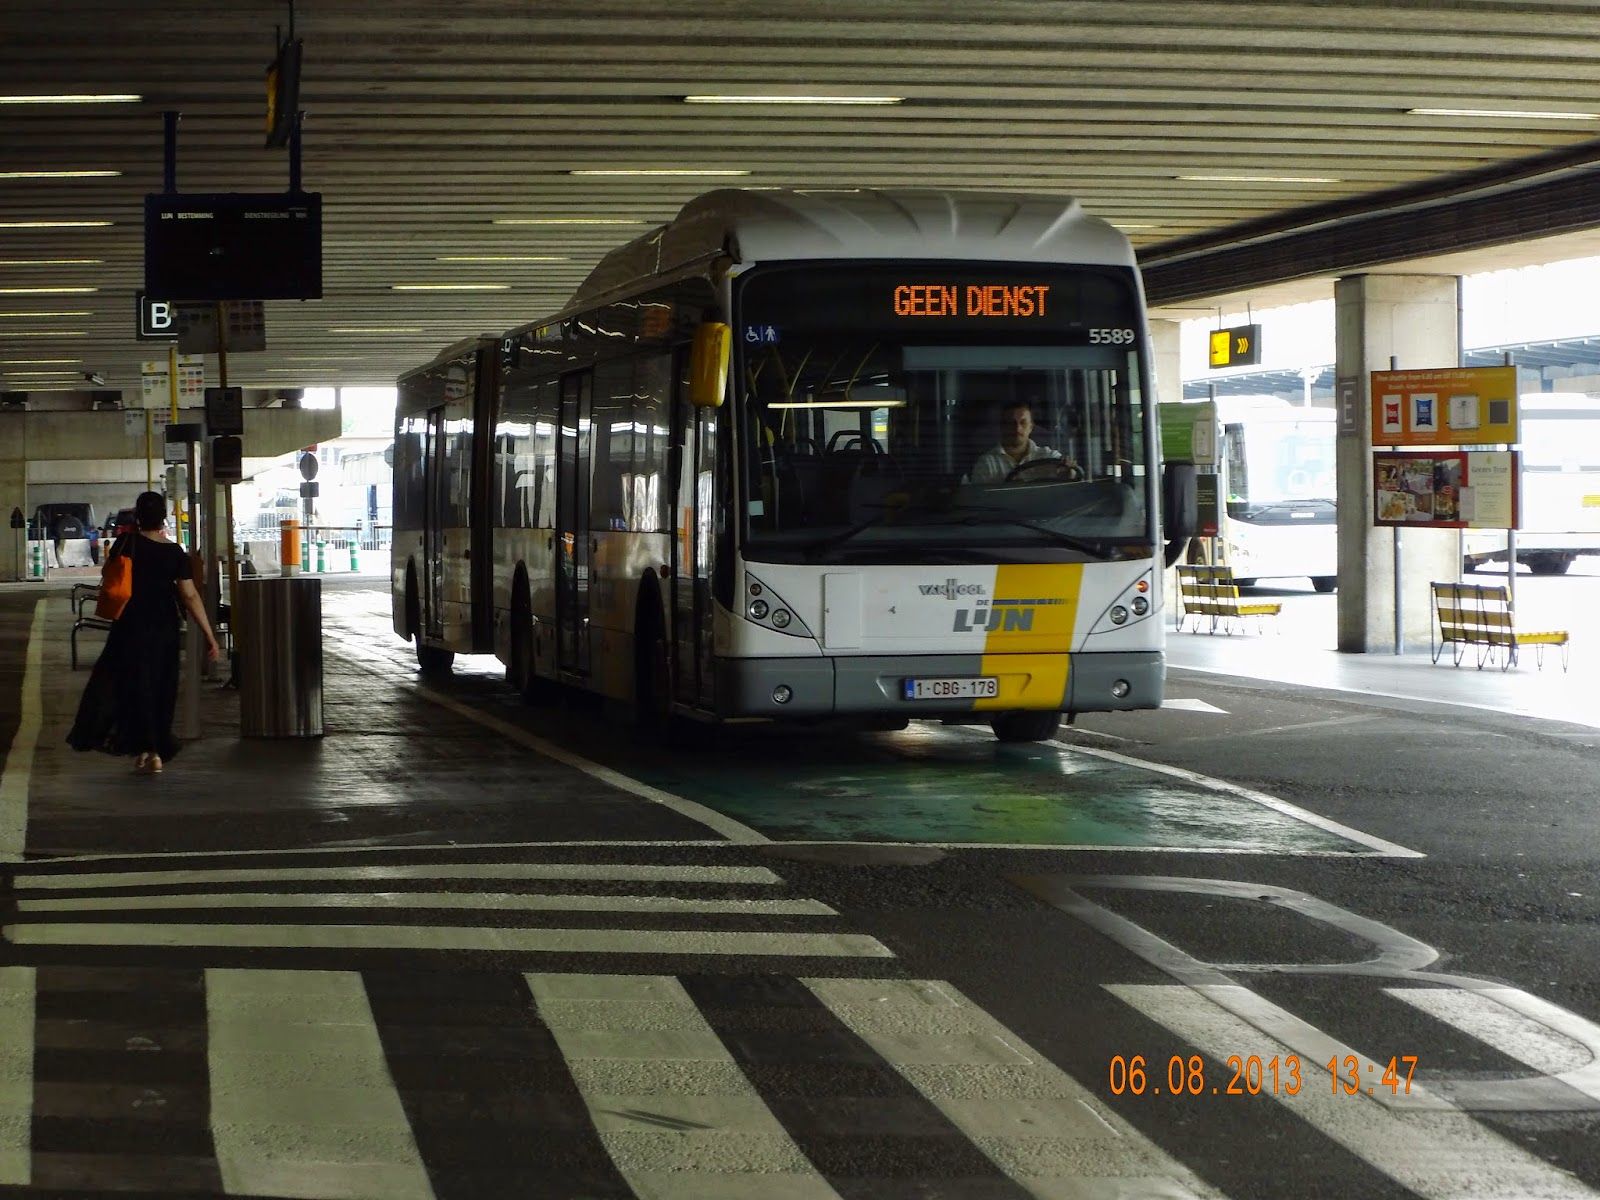 Bont Zichtbaar vertaling busfoto's van de VVM (de lijn) : augustus 2014